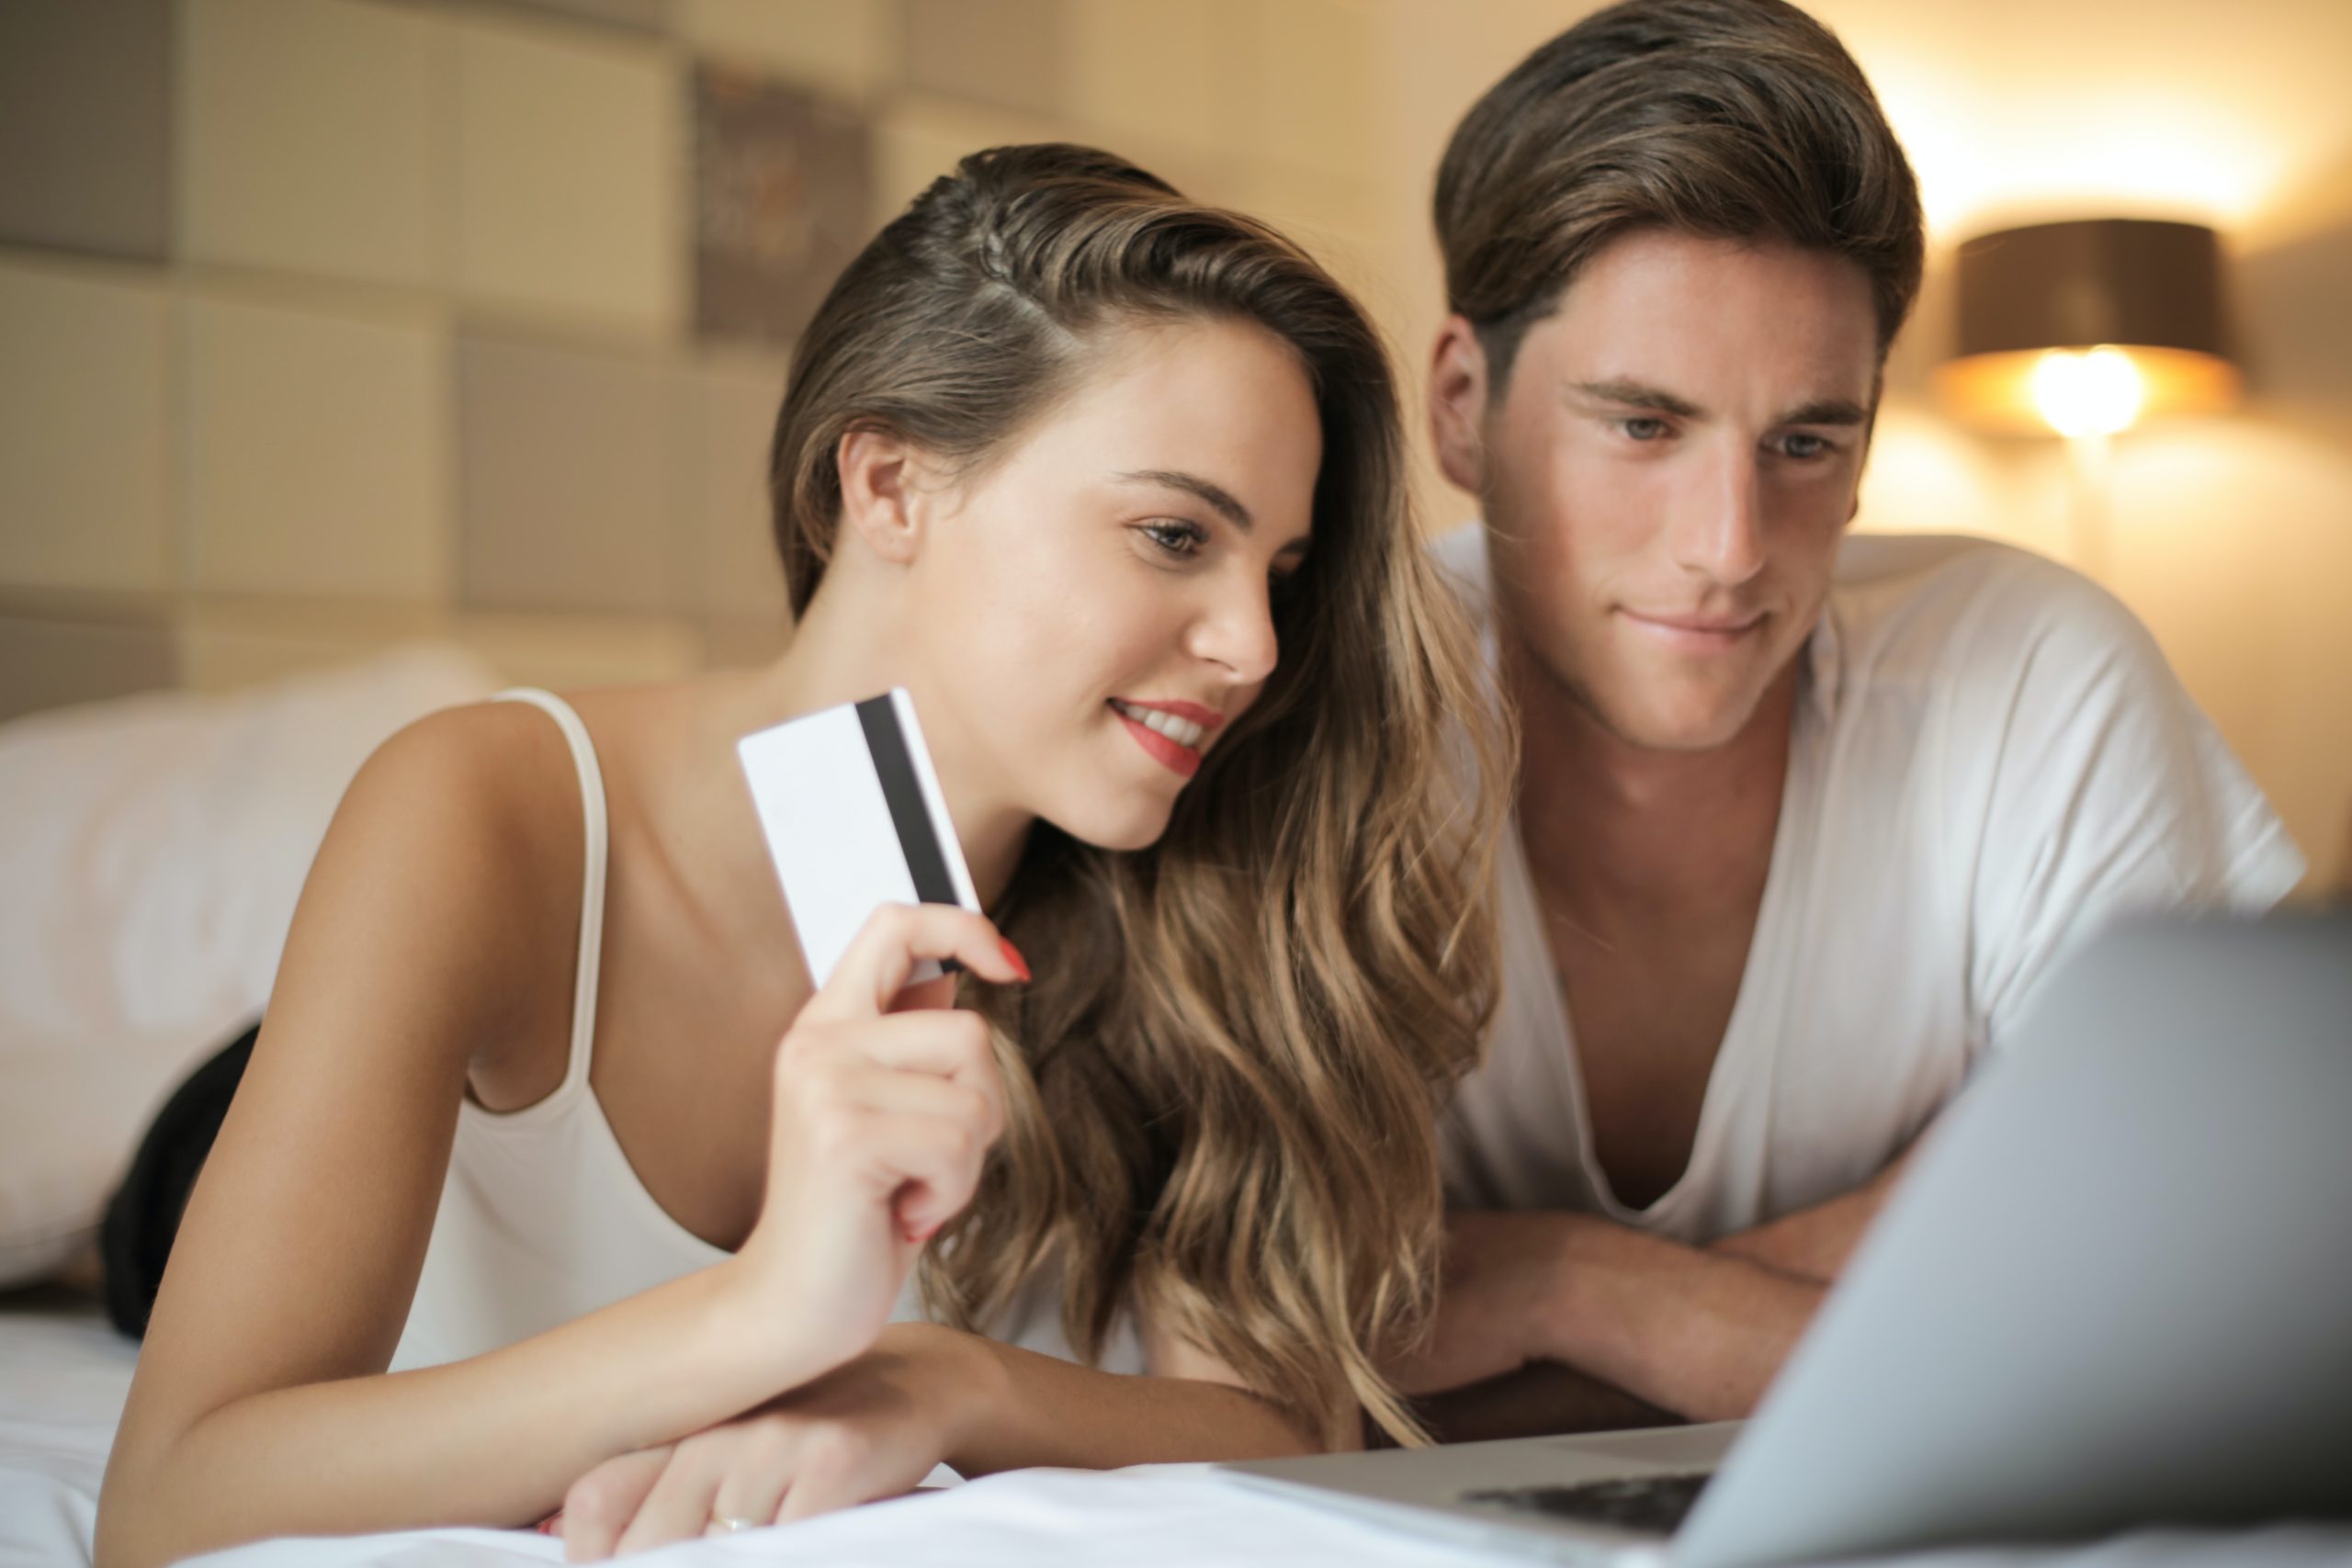 Ein junges Paar sitzt auf einem Bett vor einem Laptop. Die Kreditkarte in der Hand der Dame zeigt, dass sie zusammen einen Online-Kauf tätigen wollen. Das Bild soll verdeutlichen, dass Customer Centricity einen direkten Einfluss auf die Zufriedenheit der Kund:innen hat.